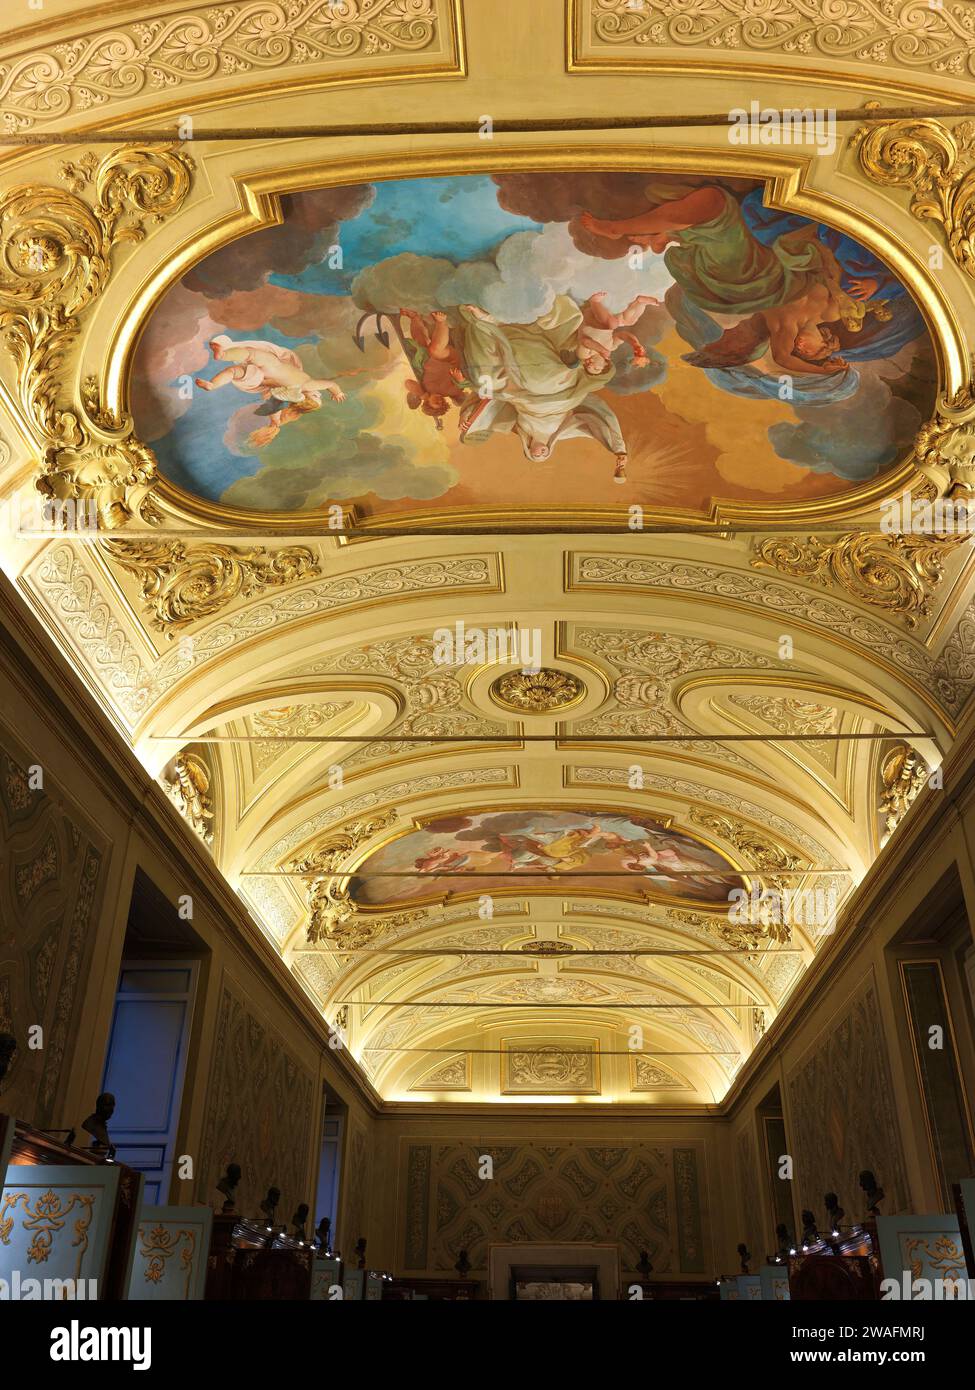 Décorations de plafond dans le musée chrétien ou sacré, musée du Vatican, cité du Vatican, Rome, Italie. Banque D'Images